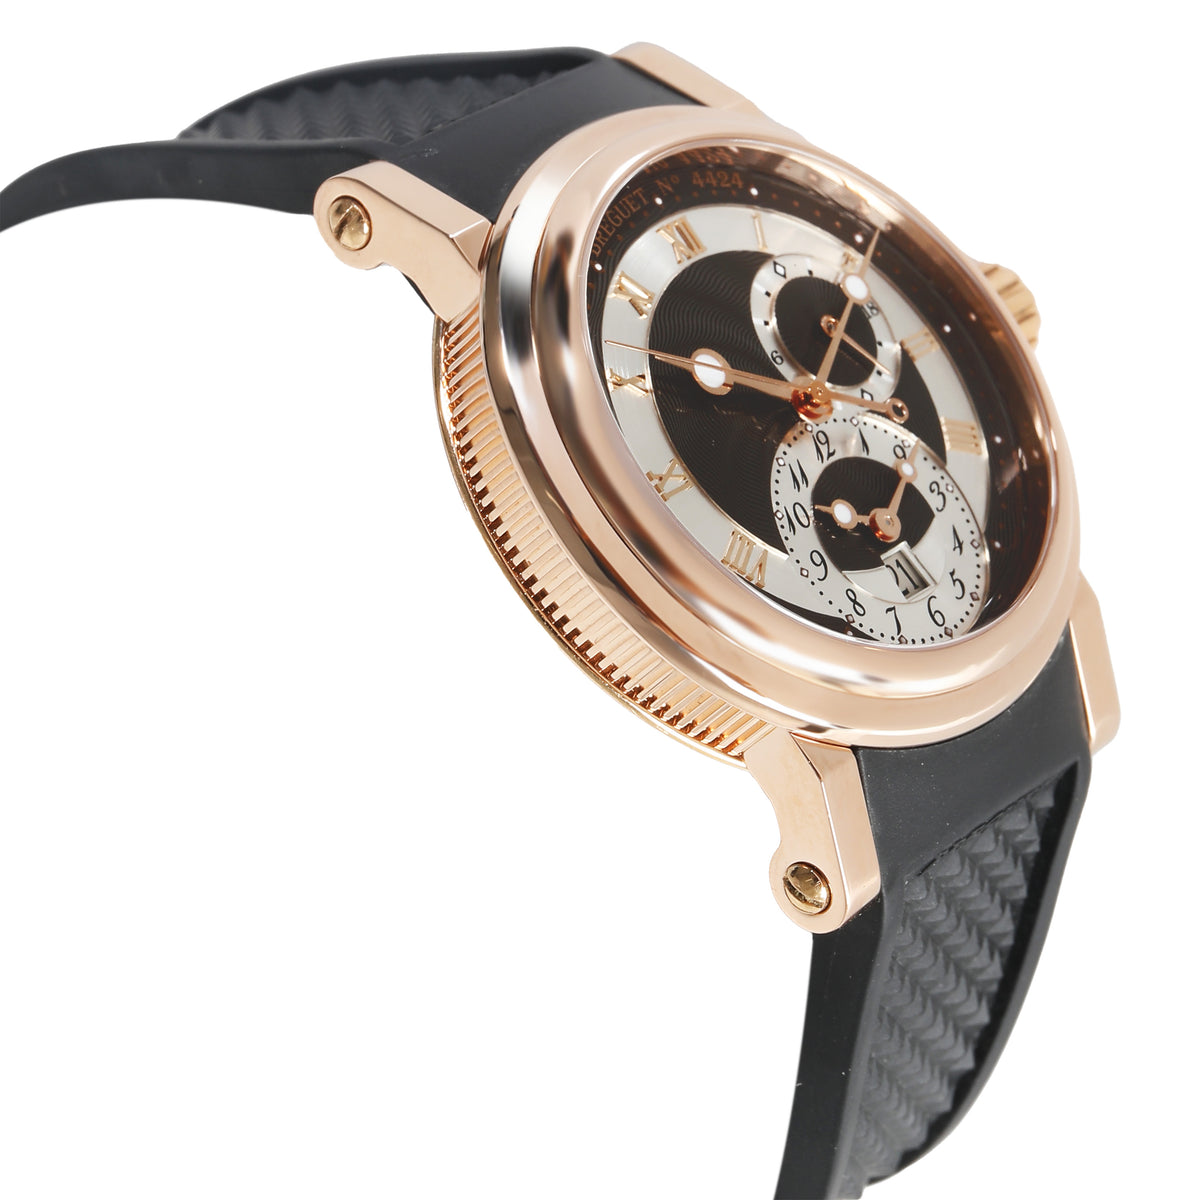 Marine GMT 5857BR/Z2/5ZU Men's Watch in 18kt Rose Gold